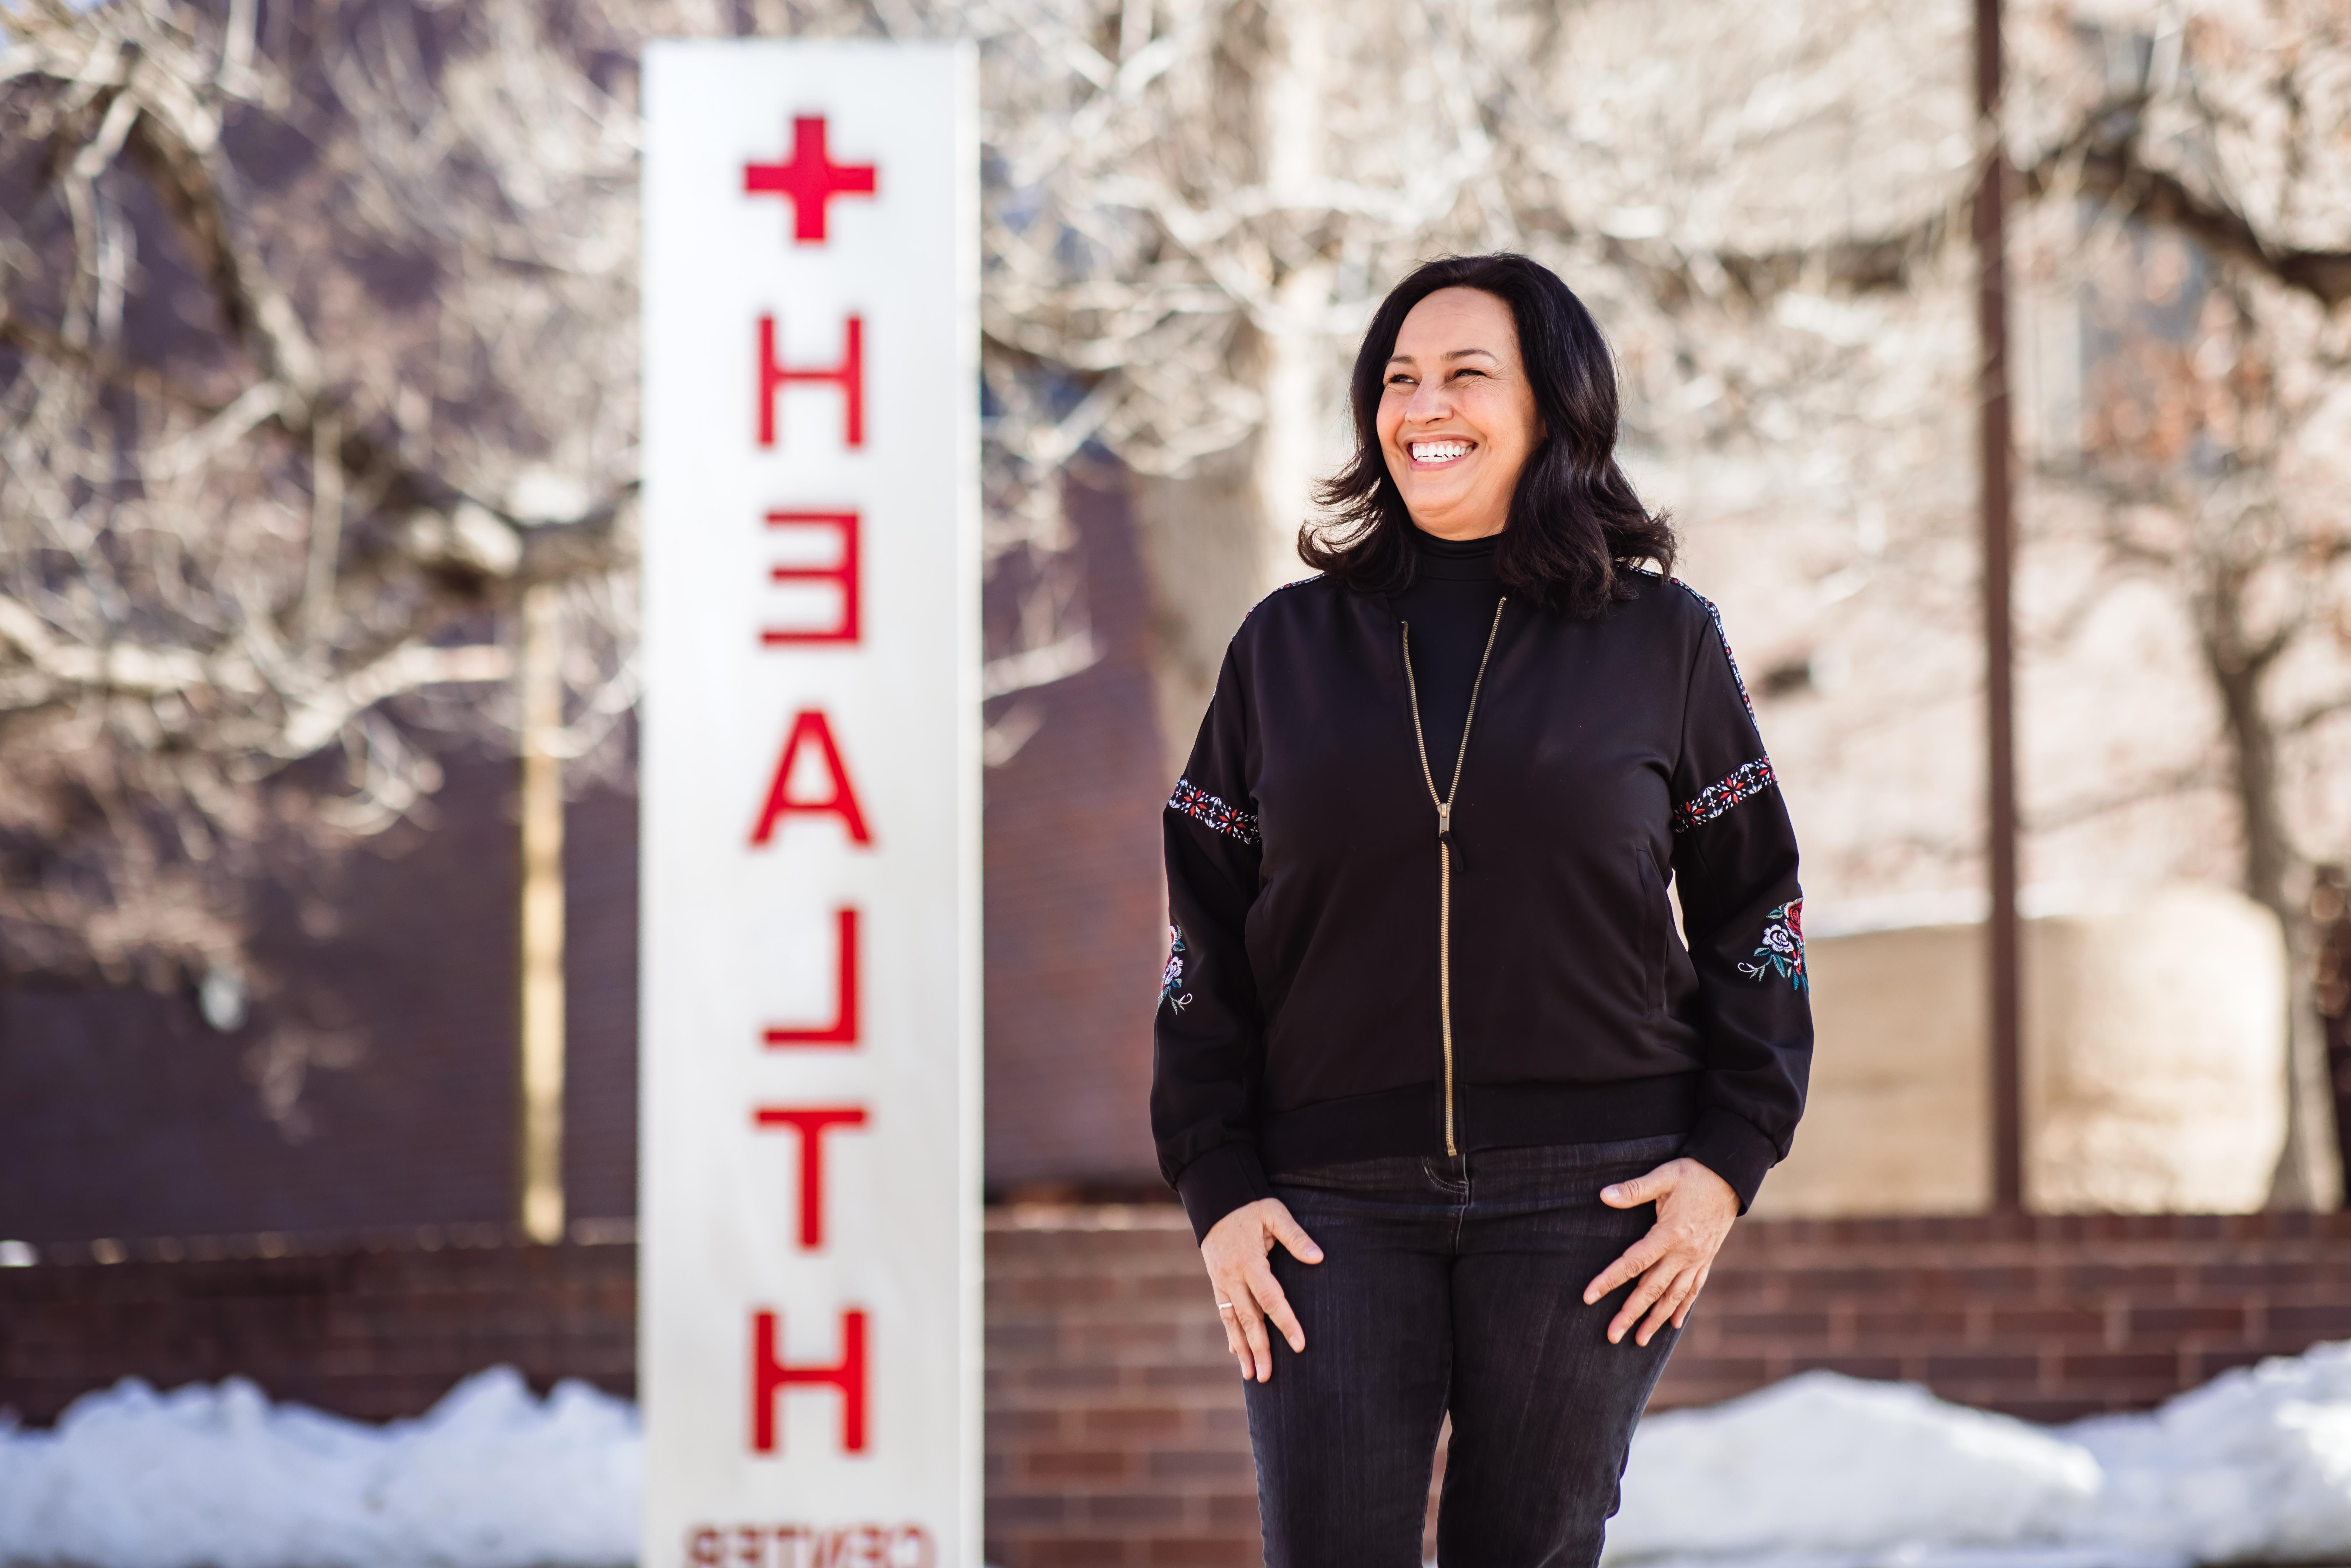 密歇根州立大学丹佛分校的生活方式医学专业, 玛丽亚Freyta, 被选为美国银行项目的三位导师之一. Freyta将指导三个主修健康领域的学生. 艾莉森·麦克拉伦摄